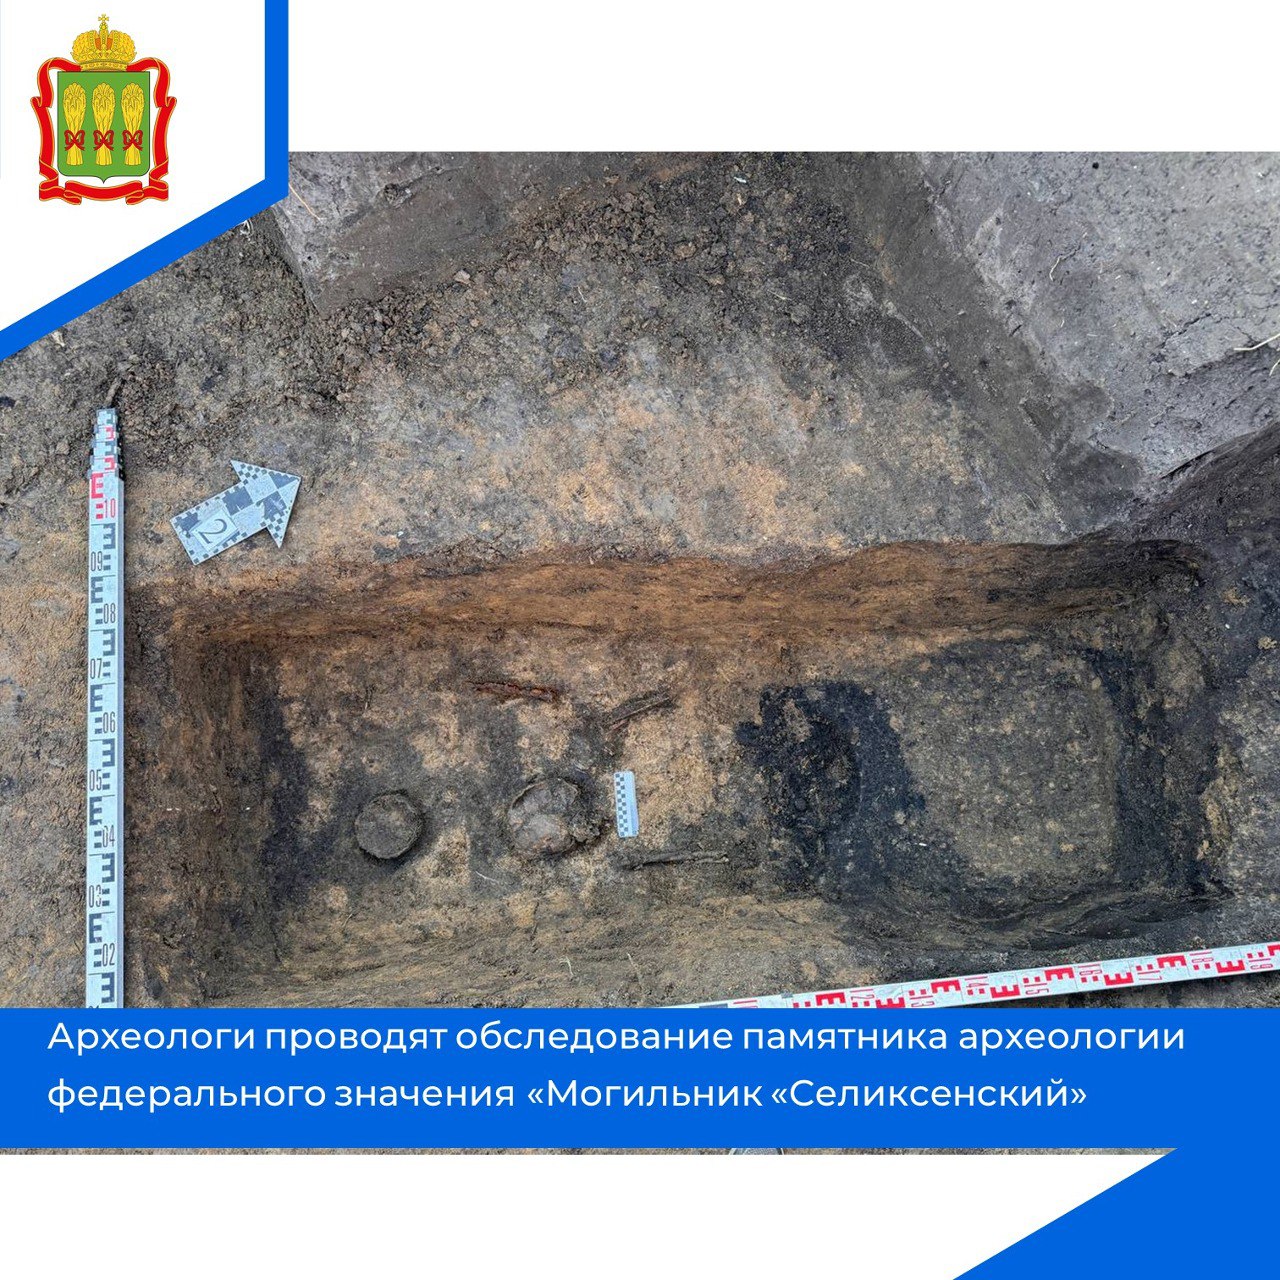 Археологи нашли могильник с древними артефактами в Бессоновском районе